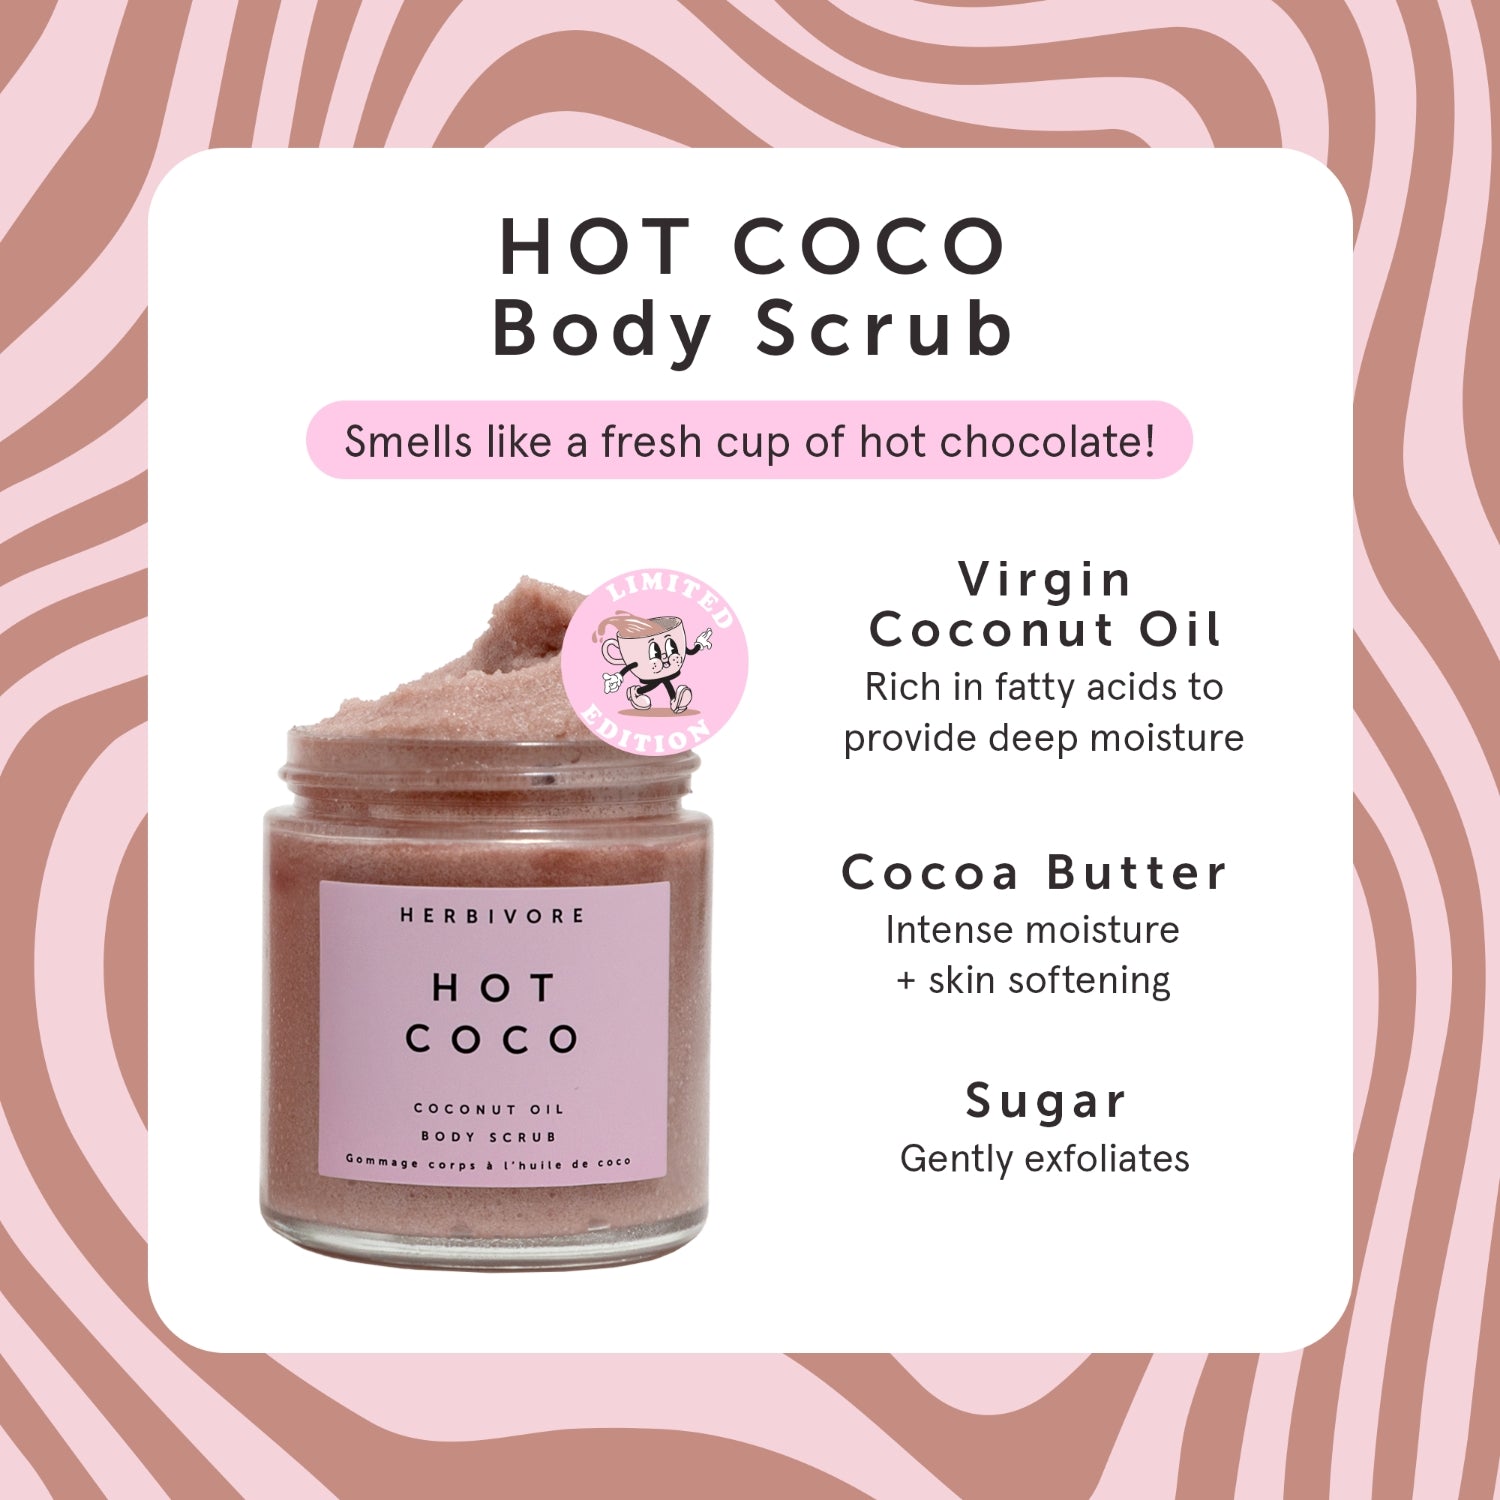 HOT COCO Coconut Oil Body Scrub